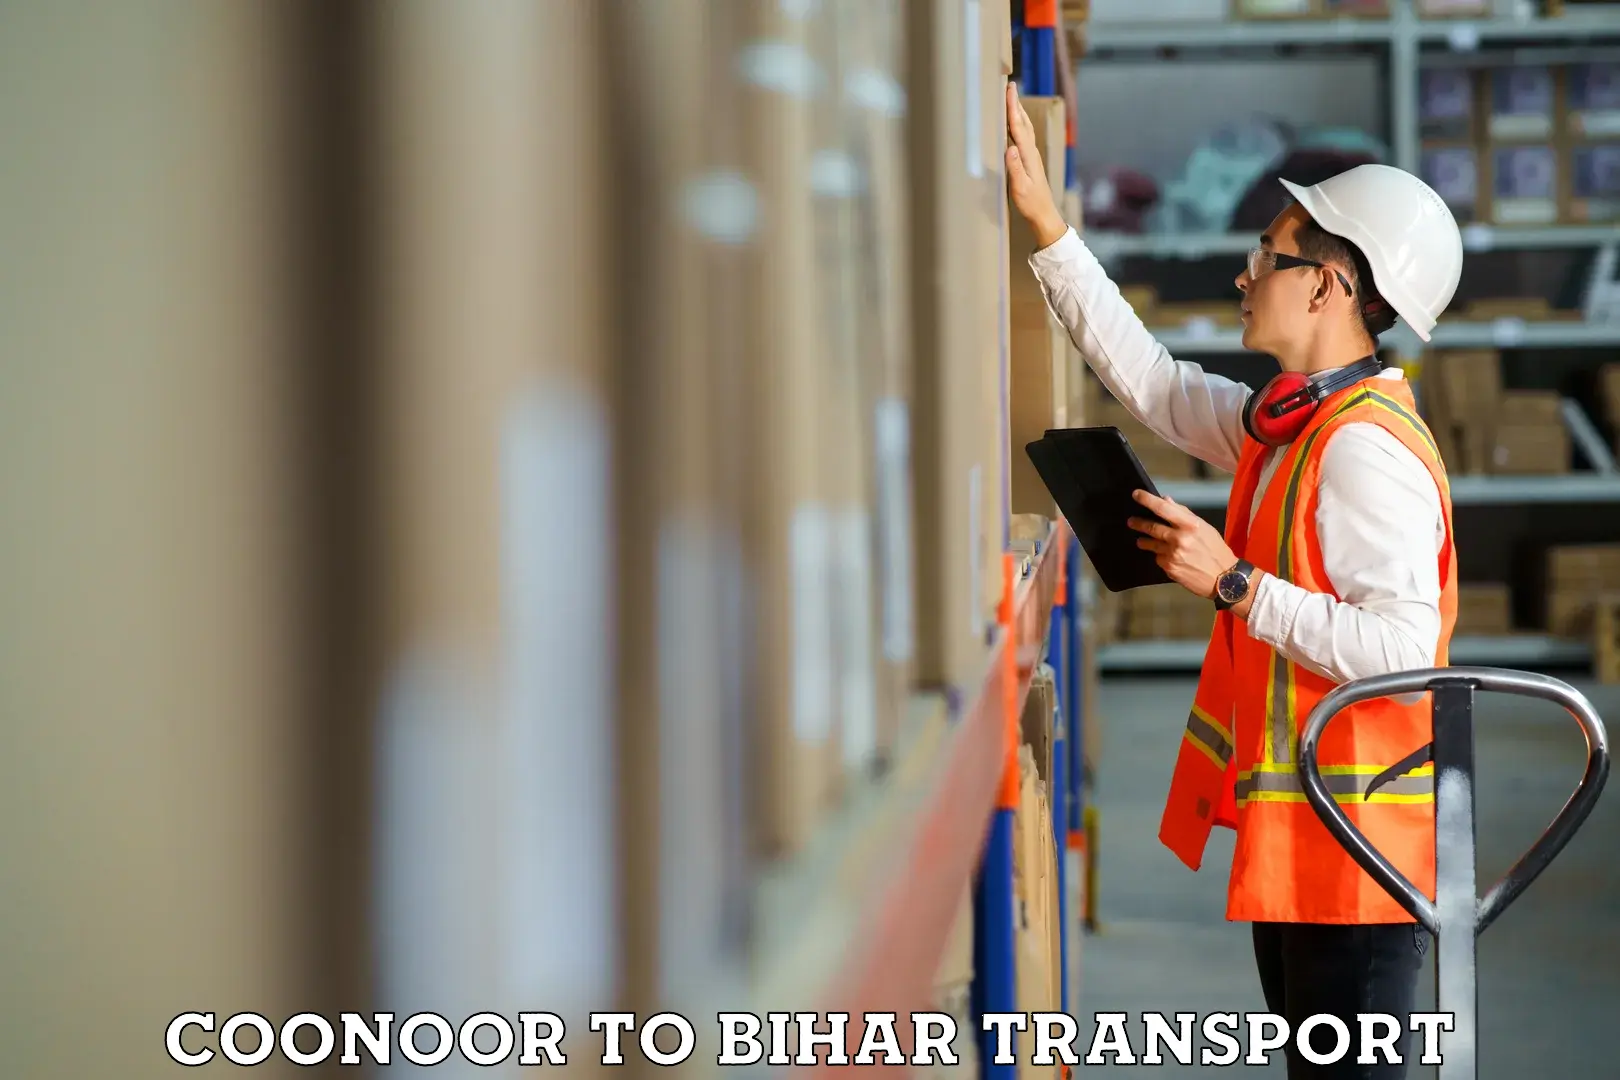 Online transport service Coonoor to Aurangabad Bihar